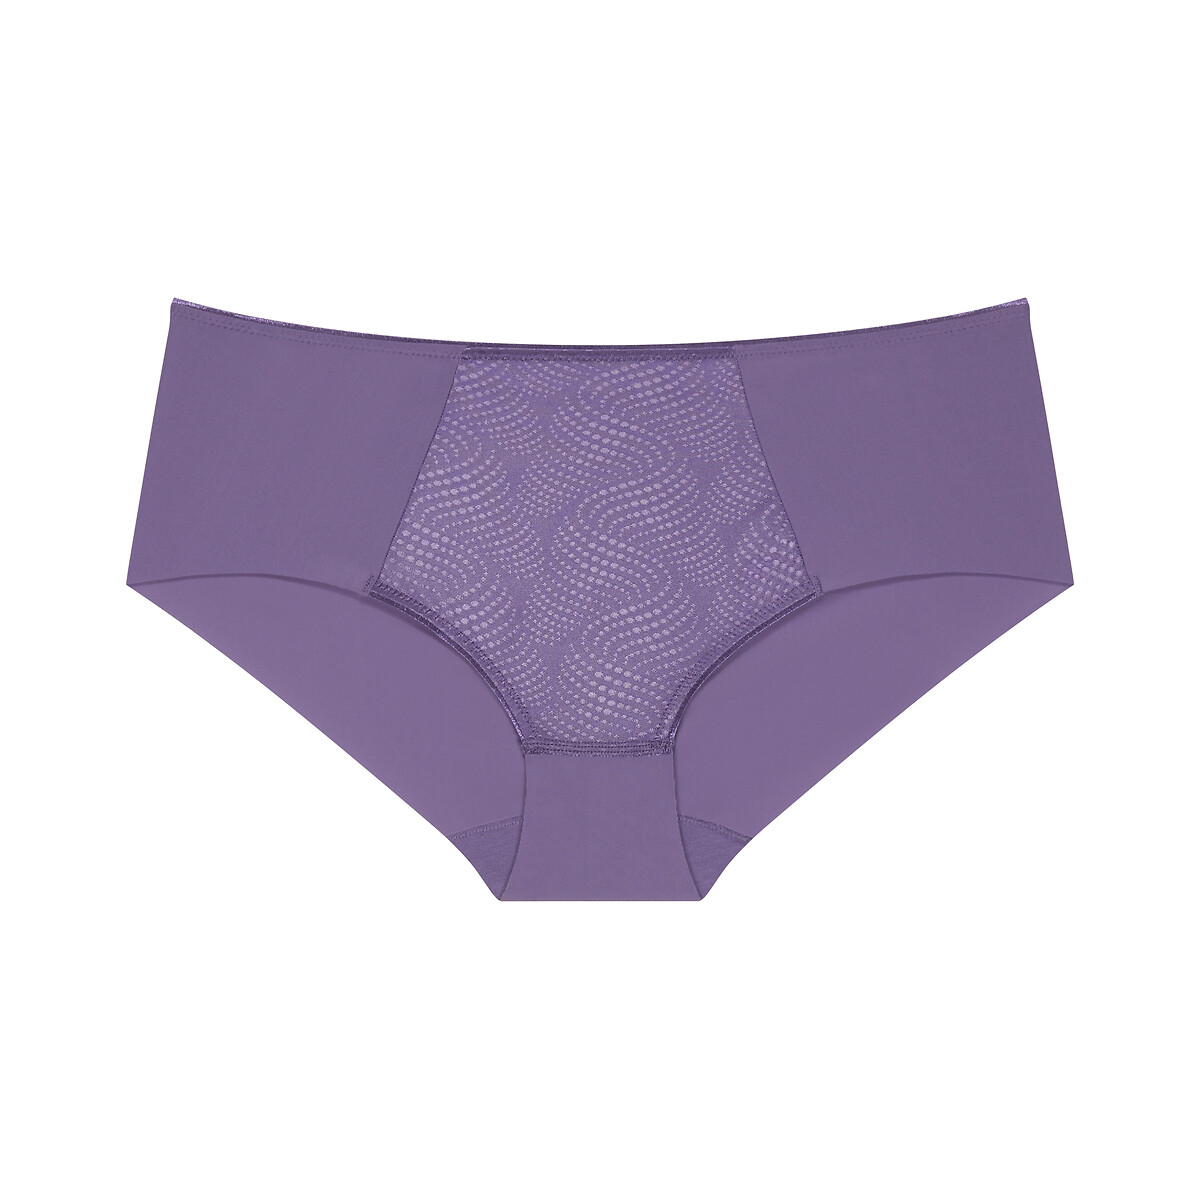 Essential minimiser shorts, purple, Triumph